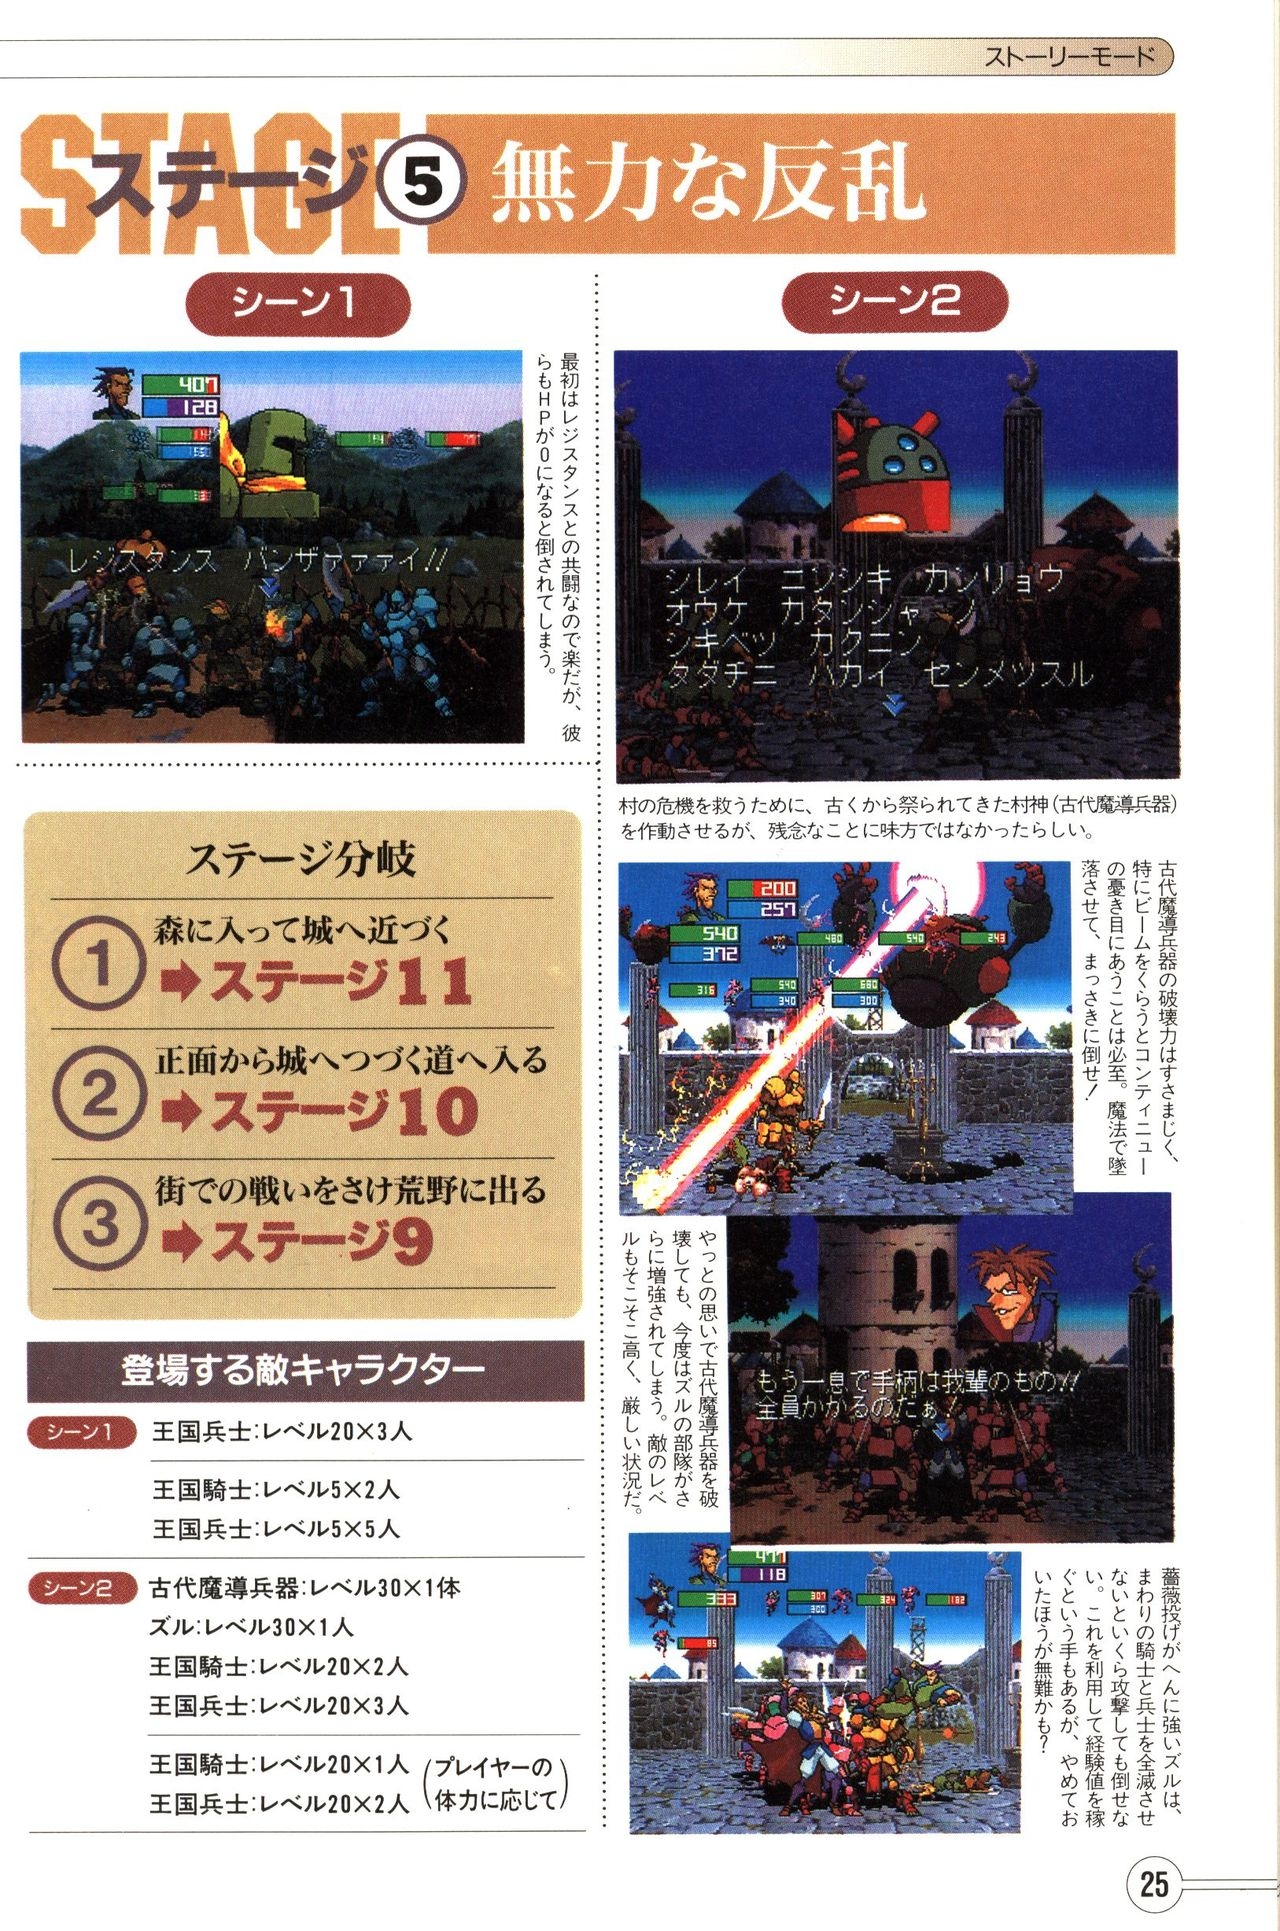 Guardian Heroes Perfect Guide (Sega Saturn magazine books) 27